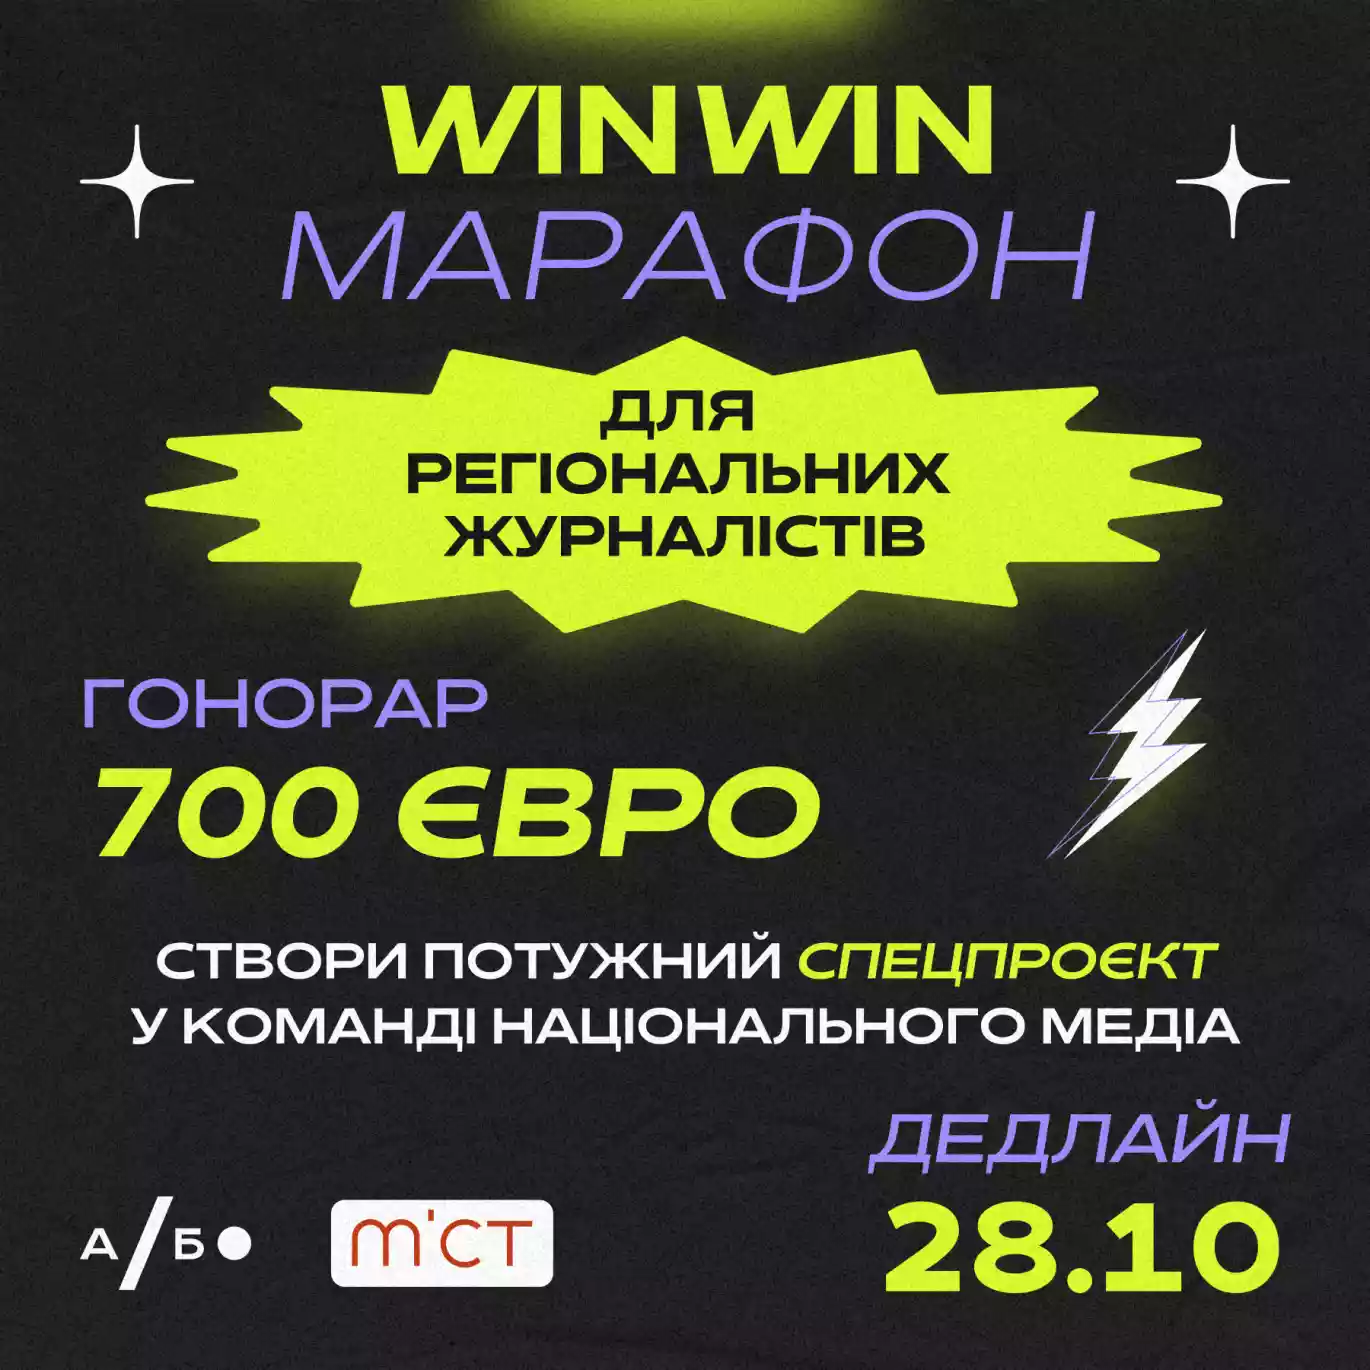 До 28 жовтня – реєстрація на WinWin-марафон для регіональних журналістів від Агенції «Або» та організації MiCT